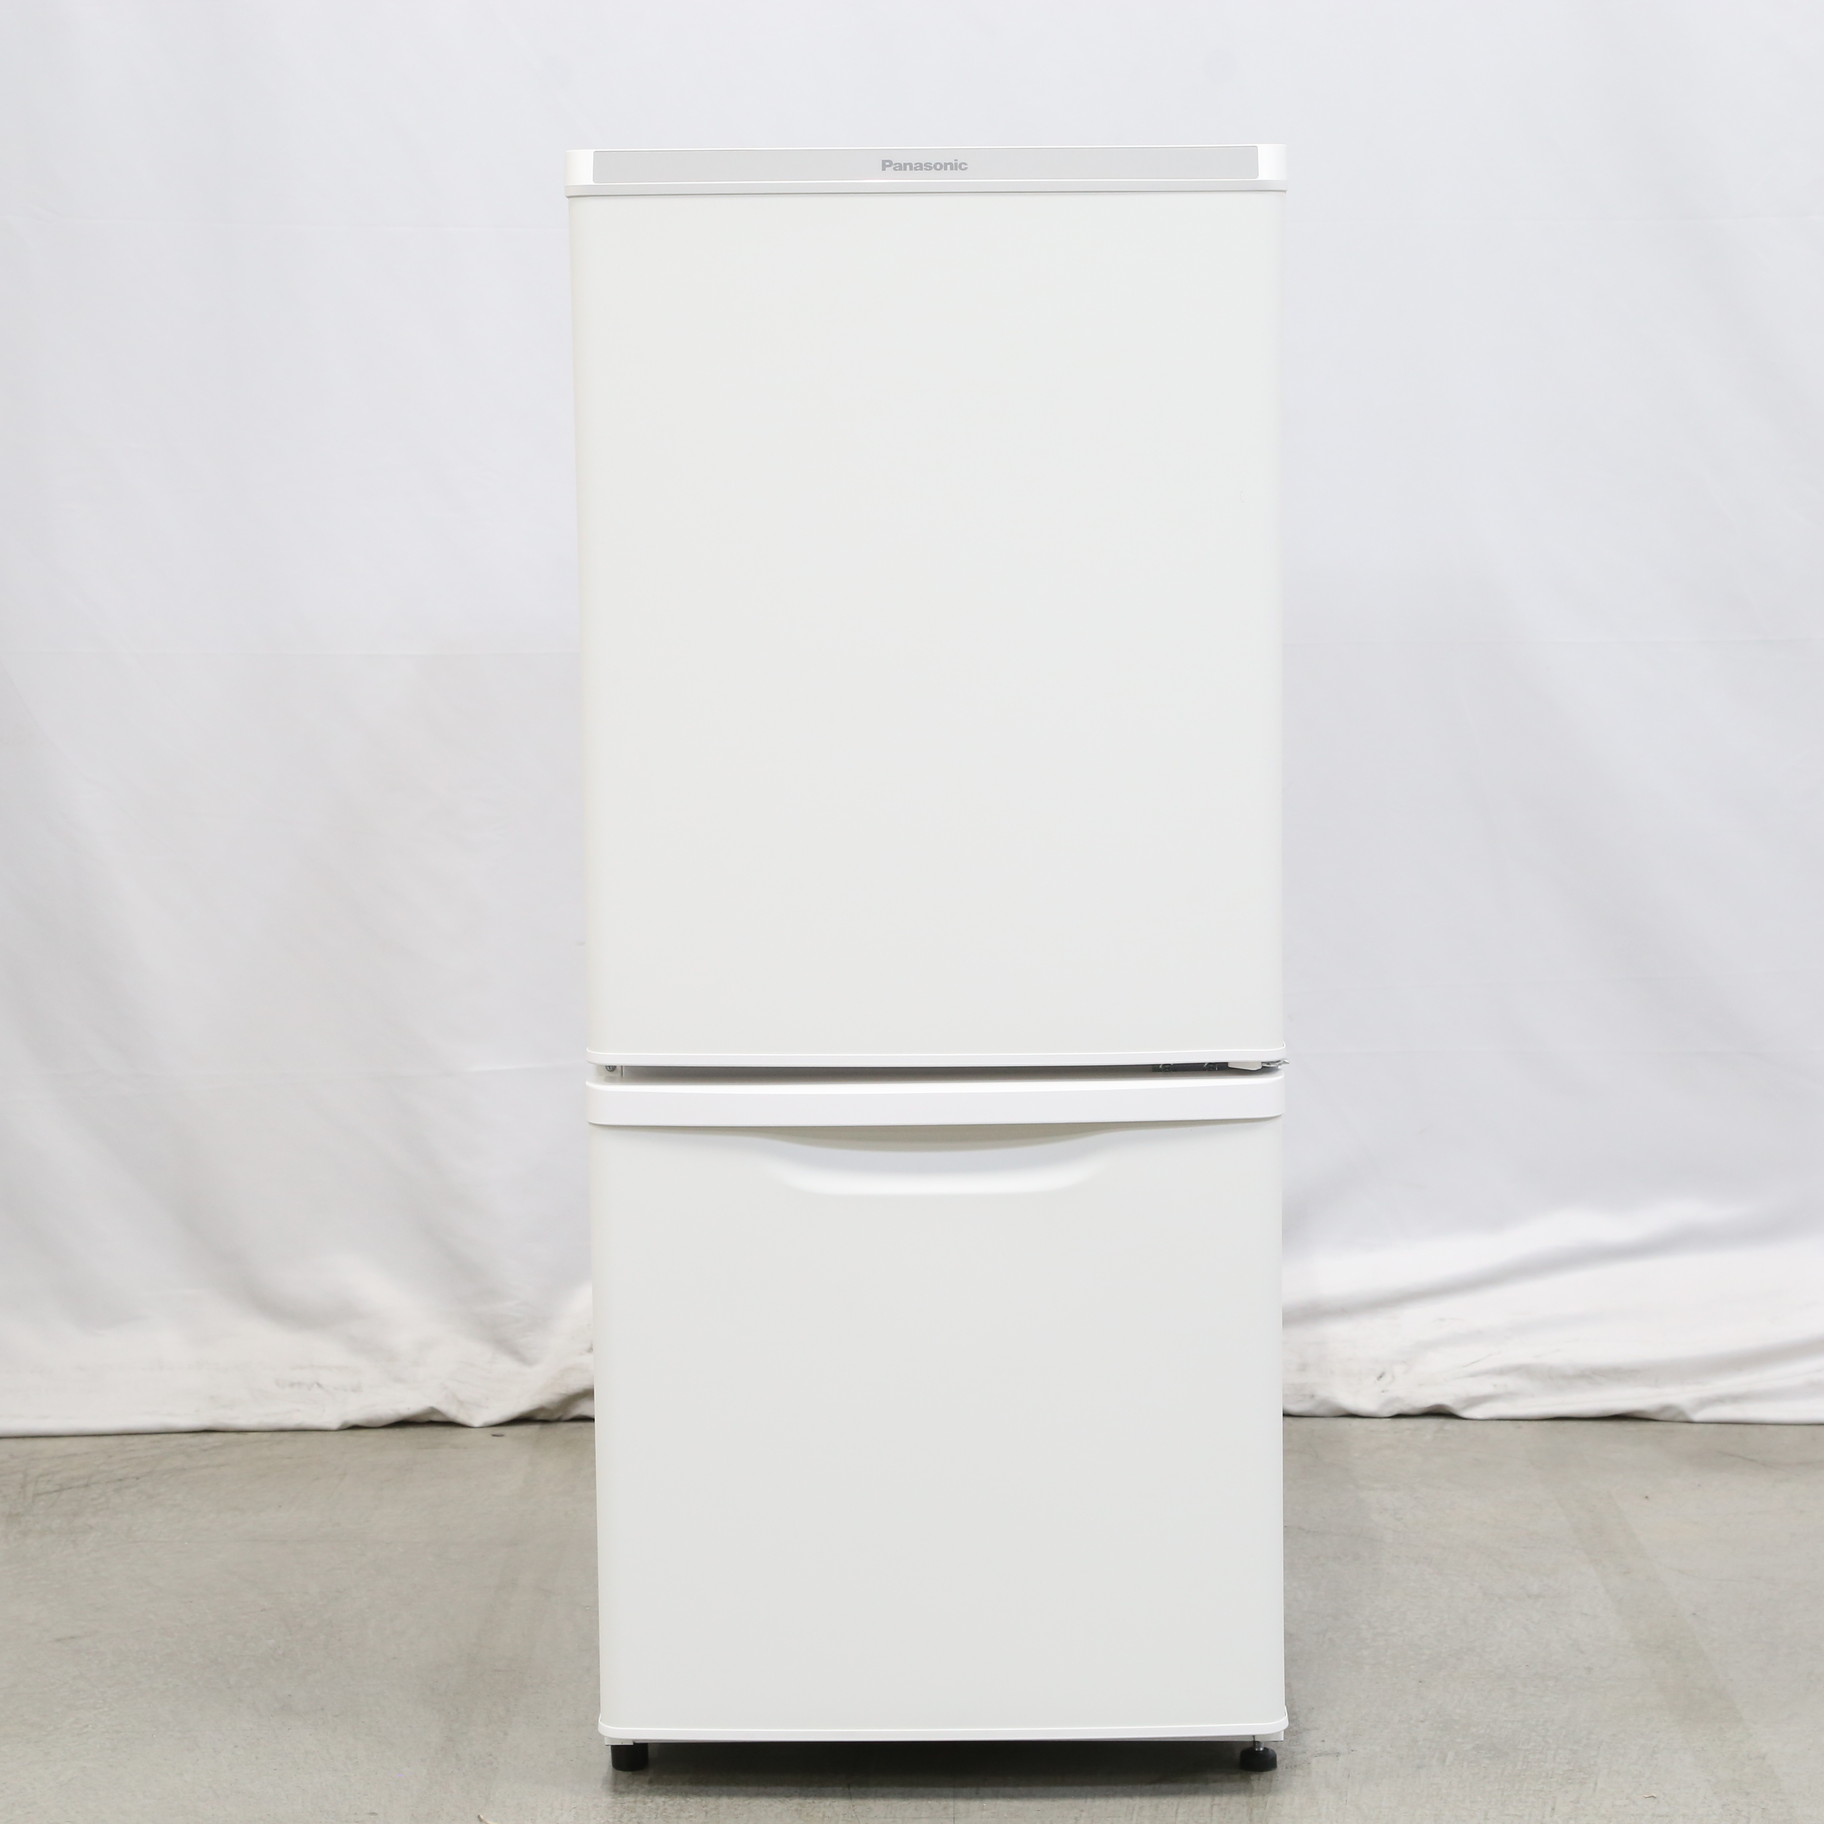 Panasonic 冷凍冷蔵庫 2ドア NR-B14DW-W ホワイト 白-